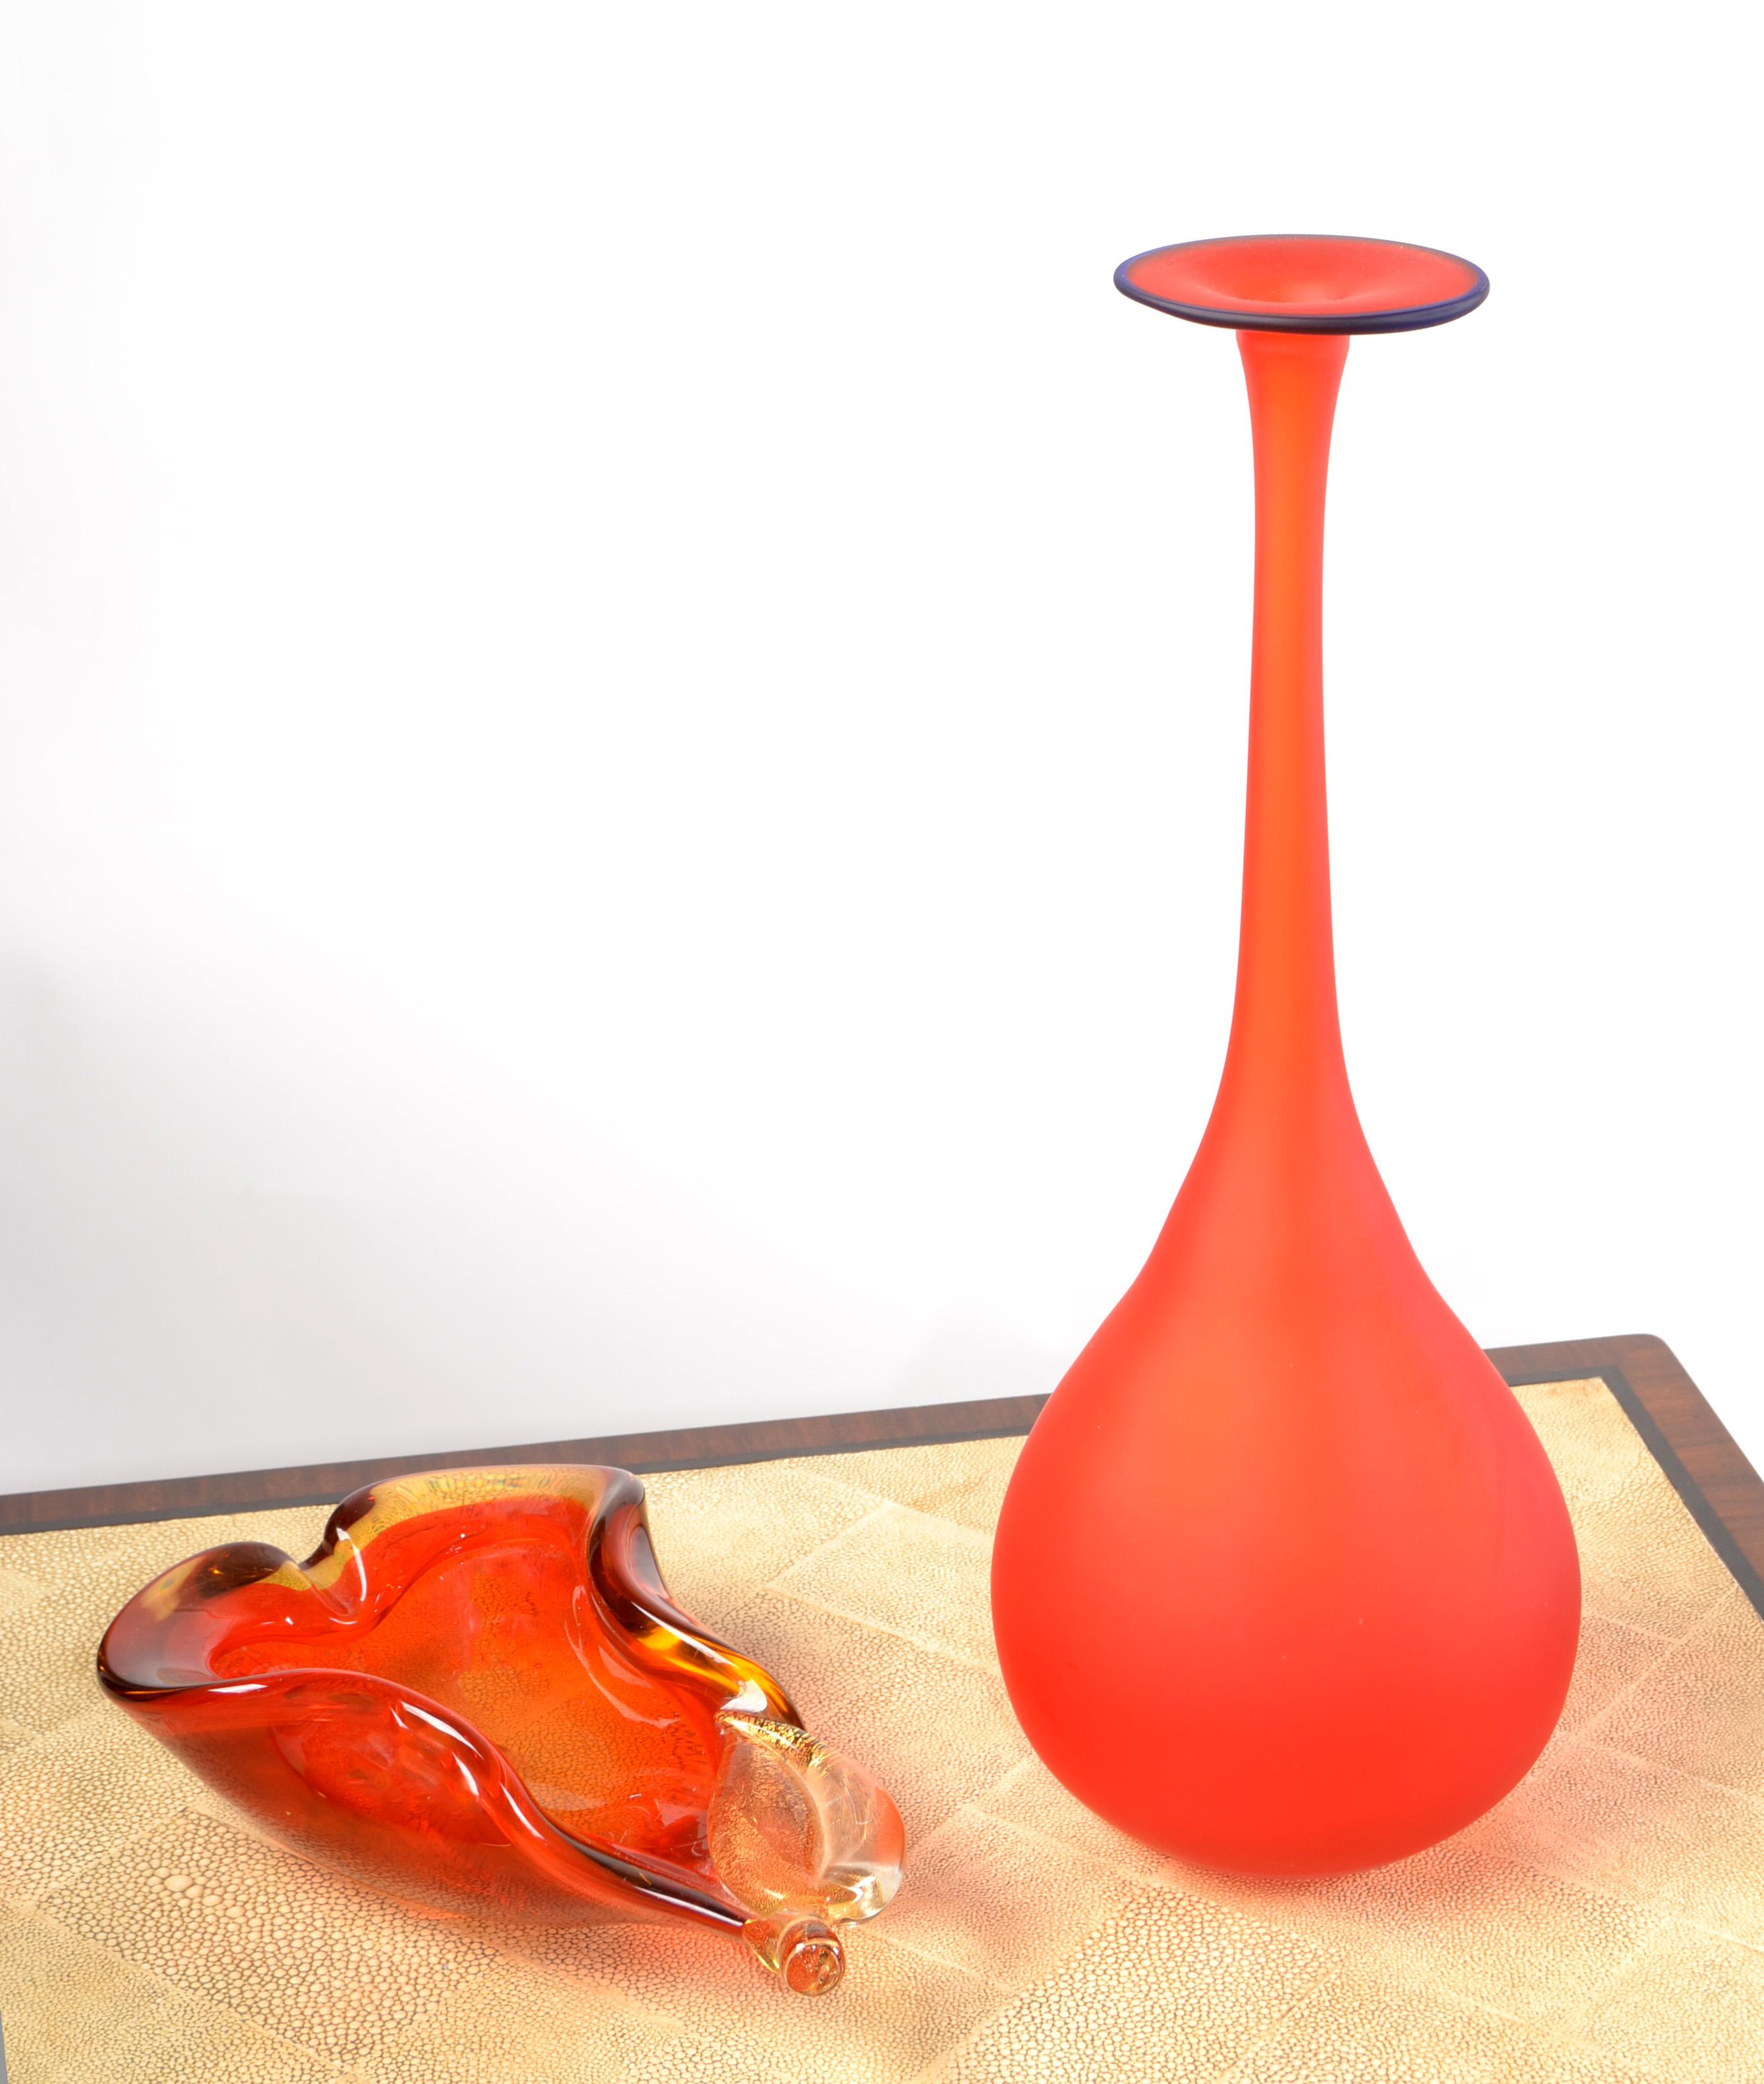 Carlo Moretti Style Italian Translucent Red & Blue Satin Glass Bud Vase Vessel In Good Condition For Sale In Miami, FL